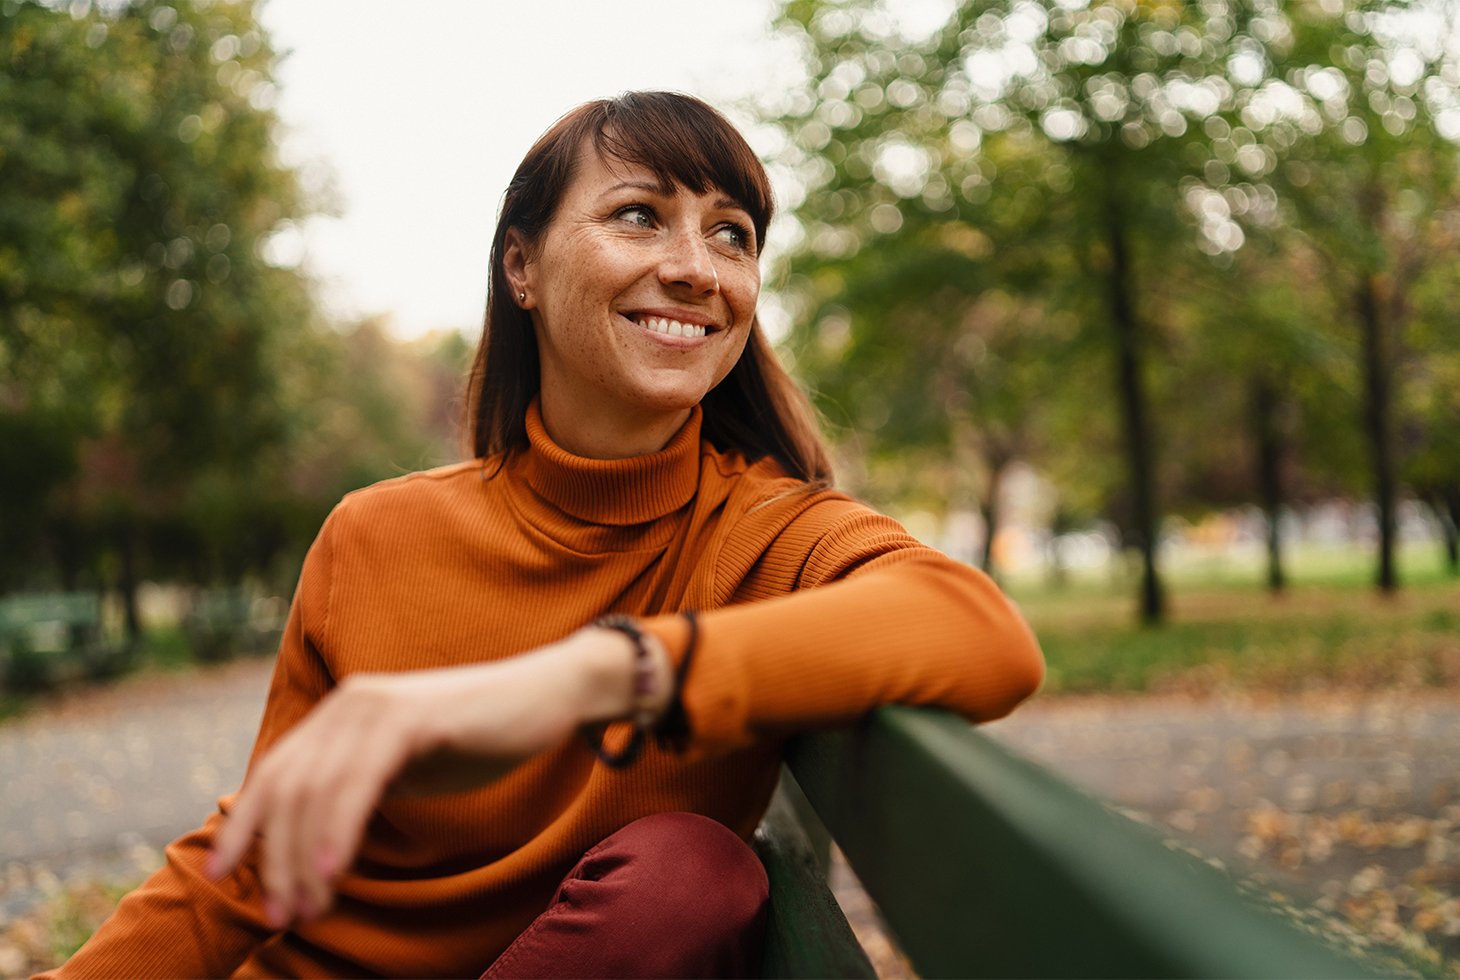 Portrait d’une jeune femme assise sur un banc public, l’air souriant